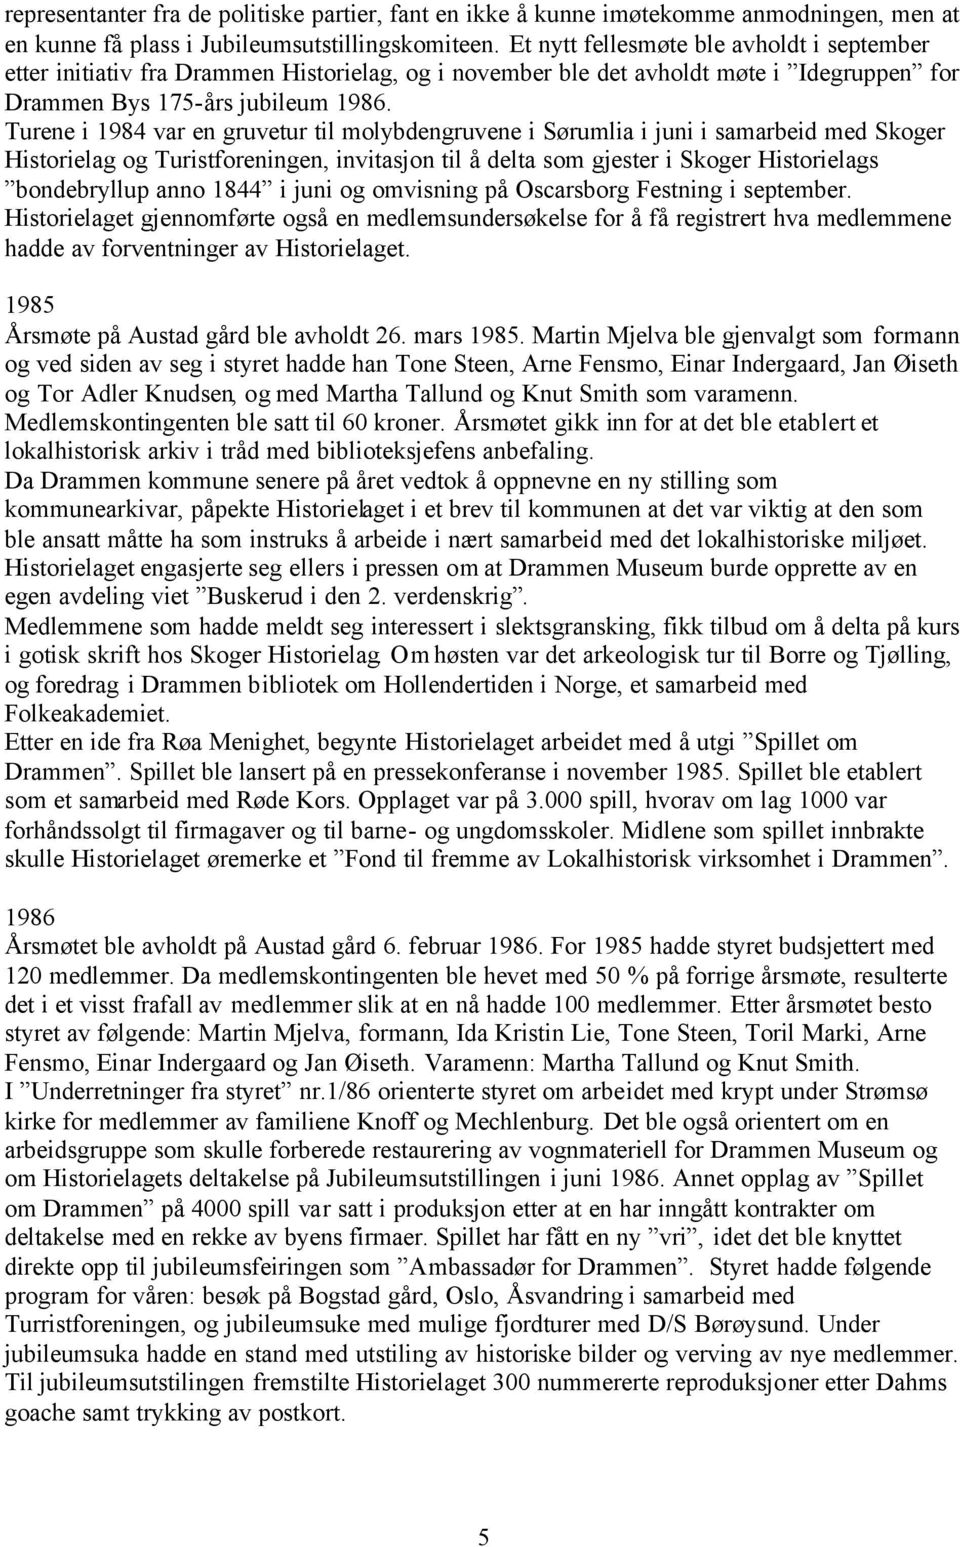 Turene i 1984 var en gruvetur til molybdengruvene i Sørumlia i juni i samarbeid med Skoger Historielag og Turistforeningen, invitasjon til å delta som gjester i Skoger Historielags bondebryllup anno